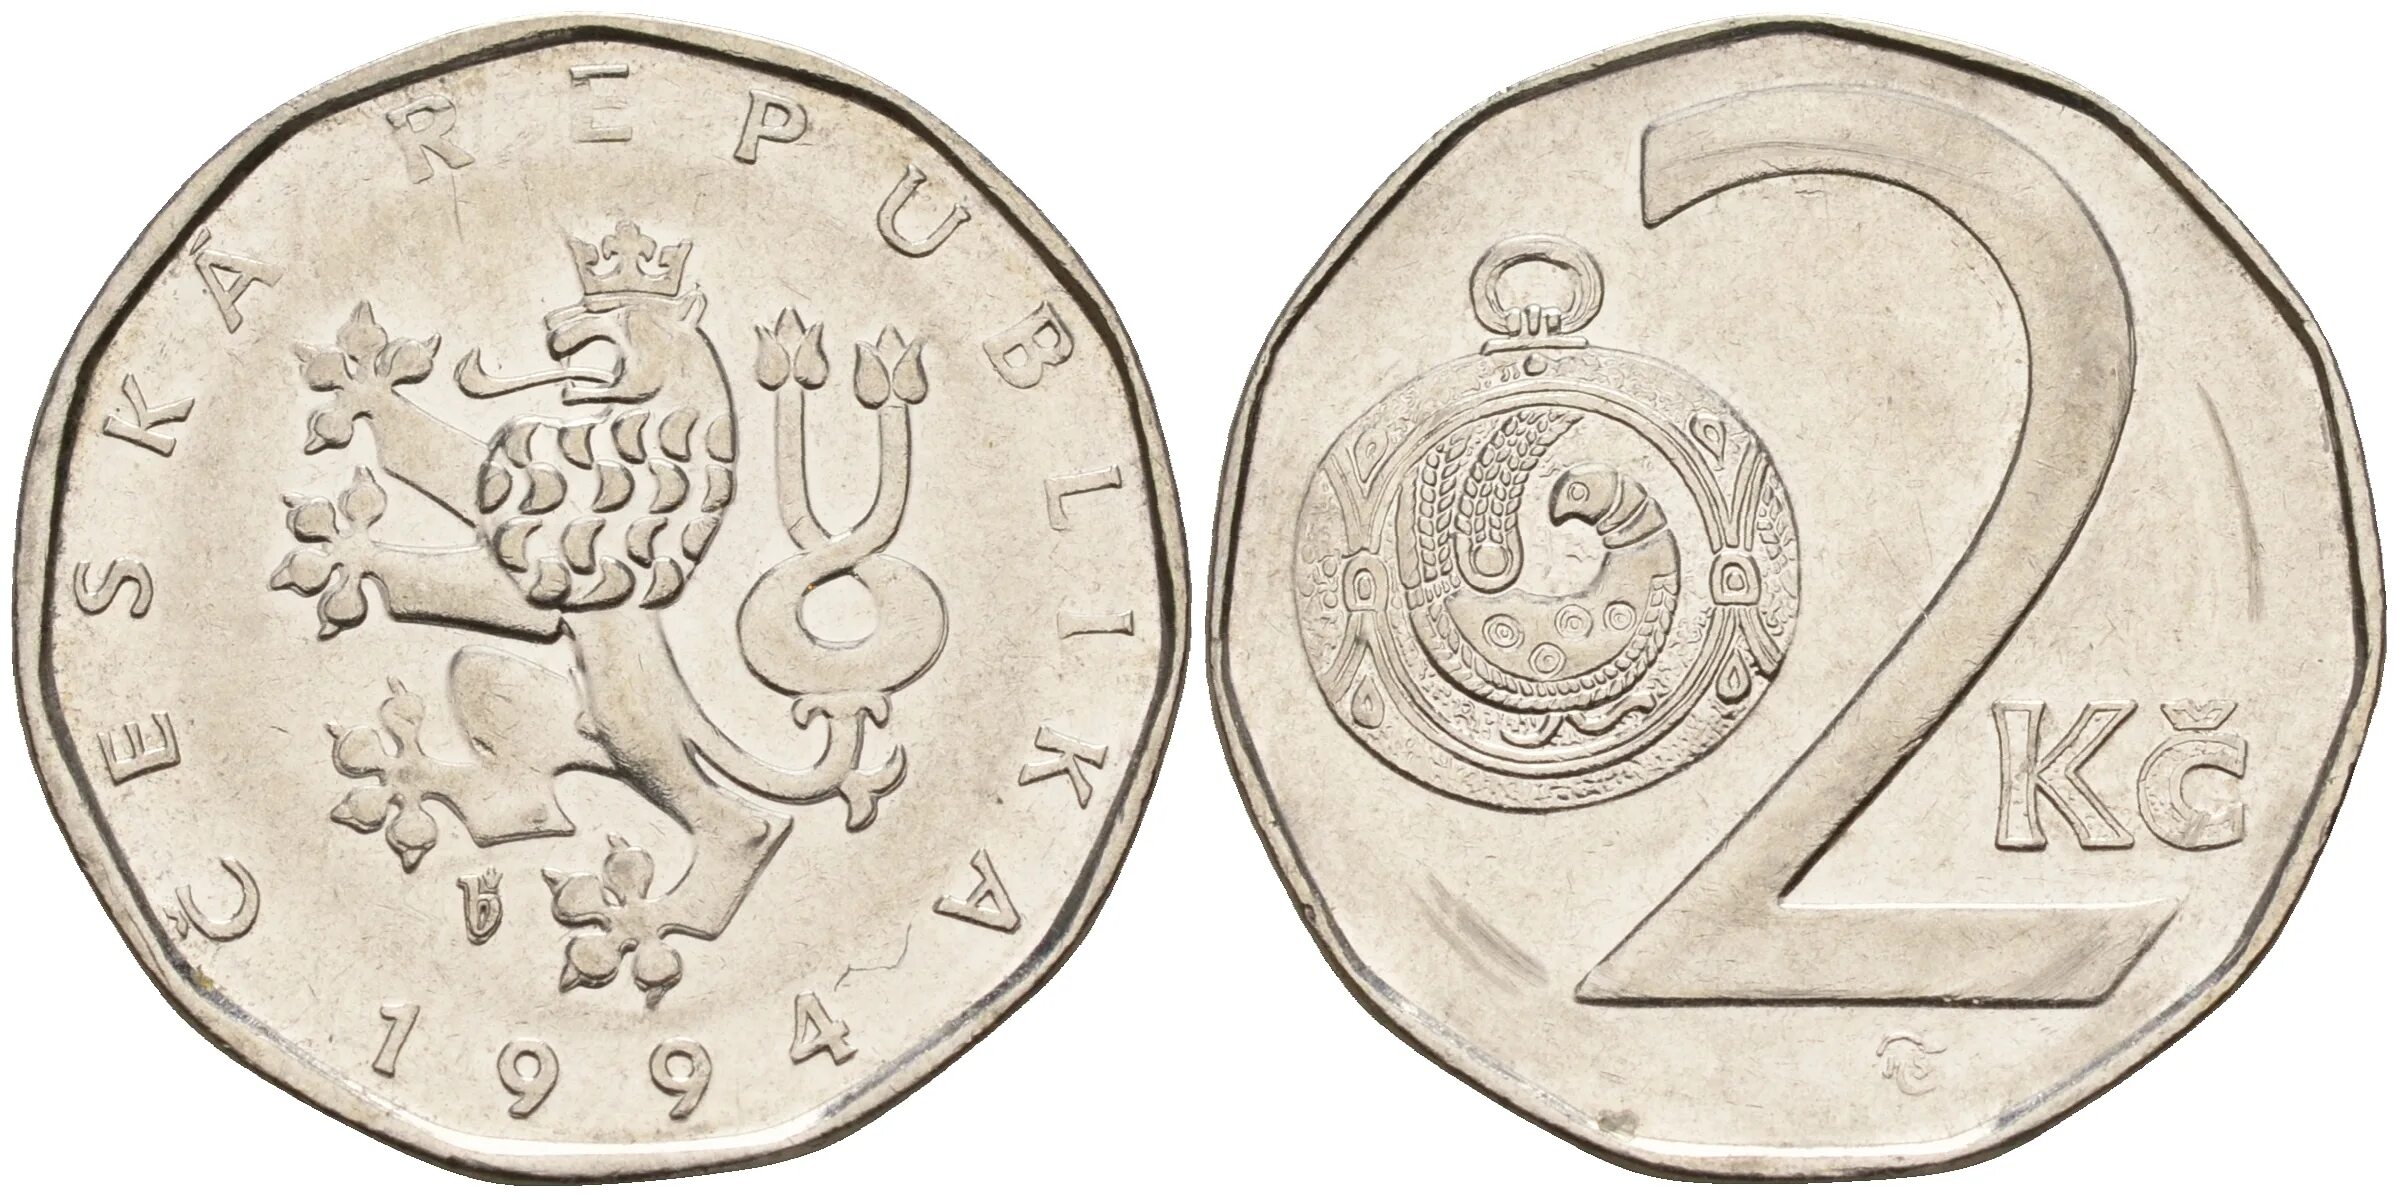 Чехия 2 кроны 1993 год. 2 Кроны 2004 Чехия. Словакия 2 кроны 1993. 2 КС чешская монета.